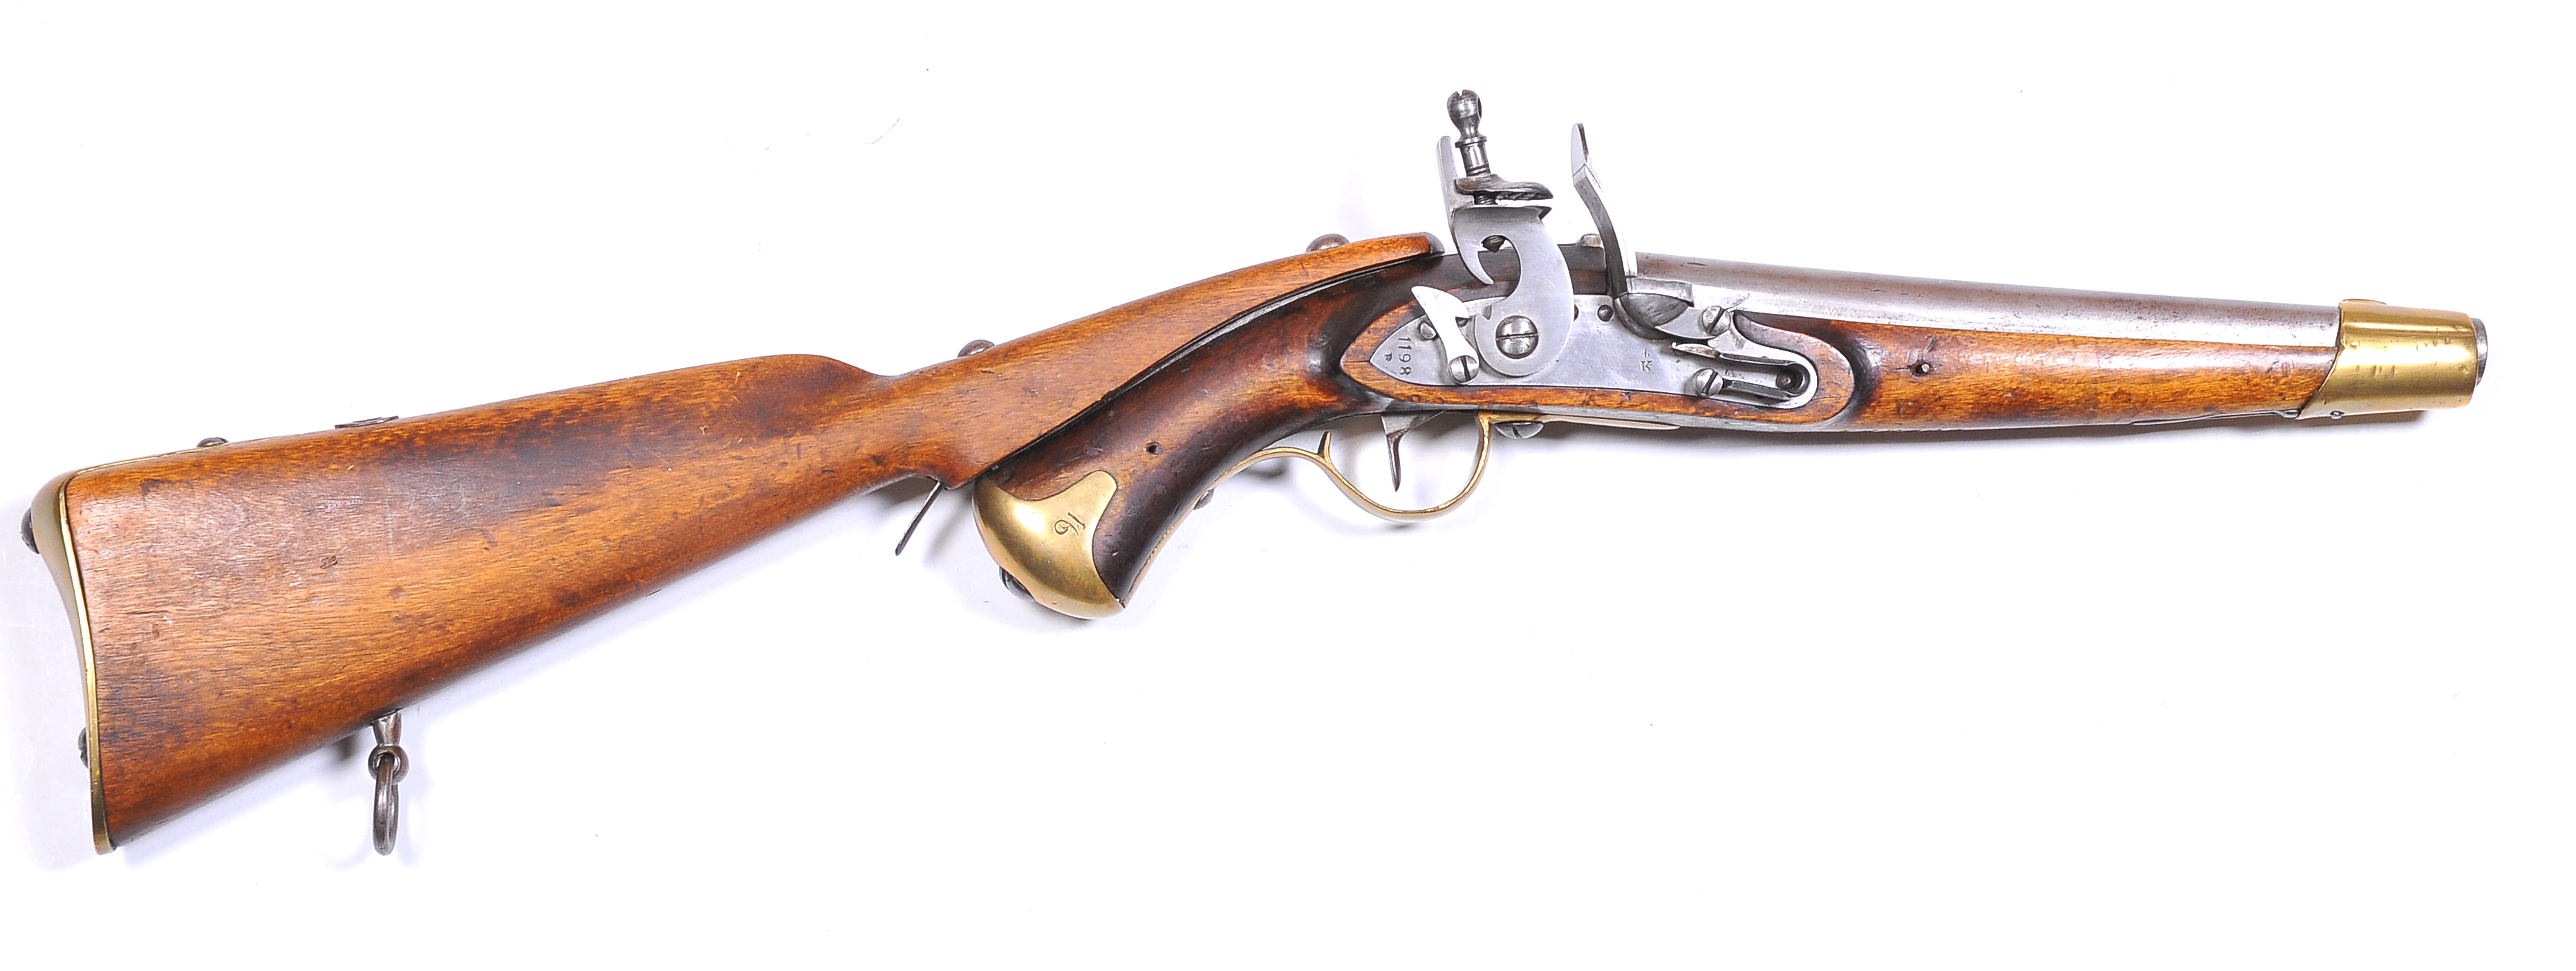 ./guns/pistol/bilder/Pistol-Kongsberg-M1831-1198R-Studser-1.jpg